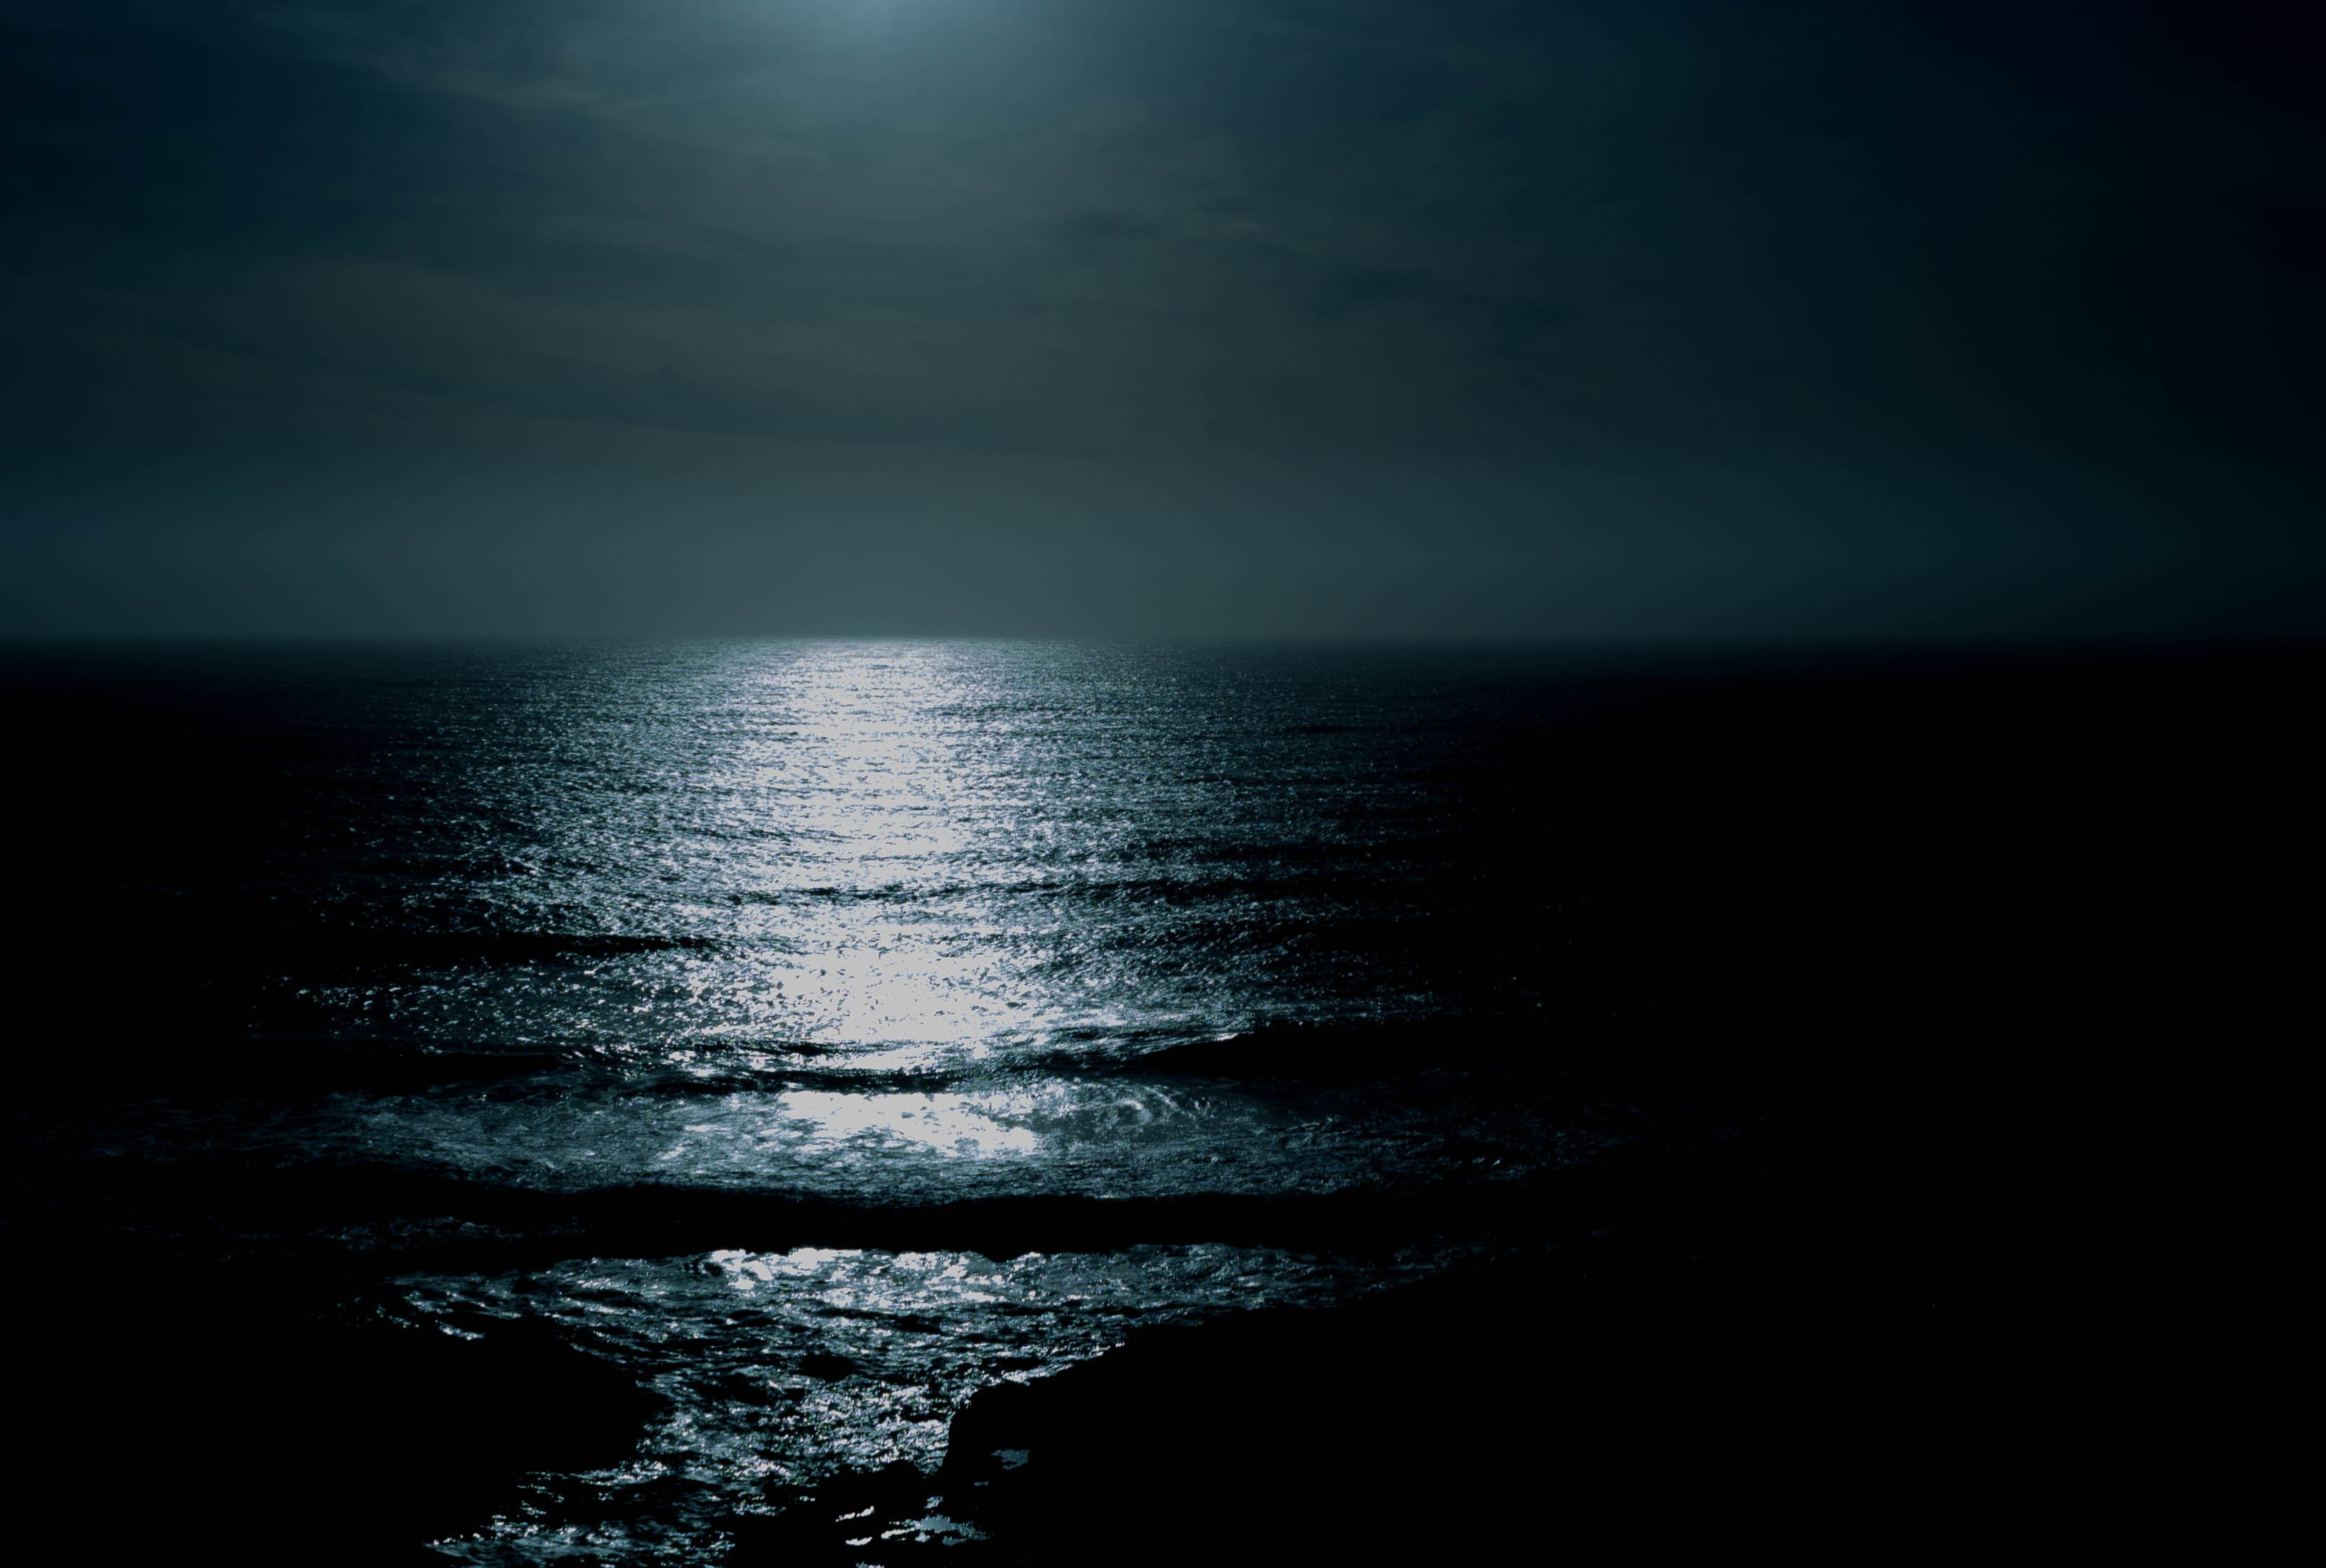 ocean wave under moonlight at nighttime